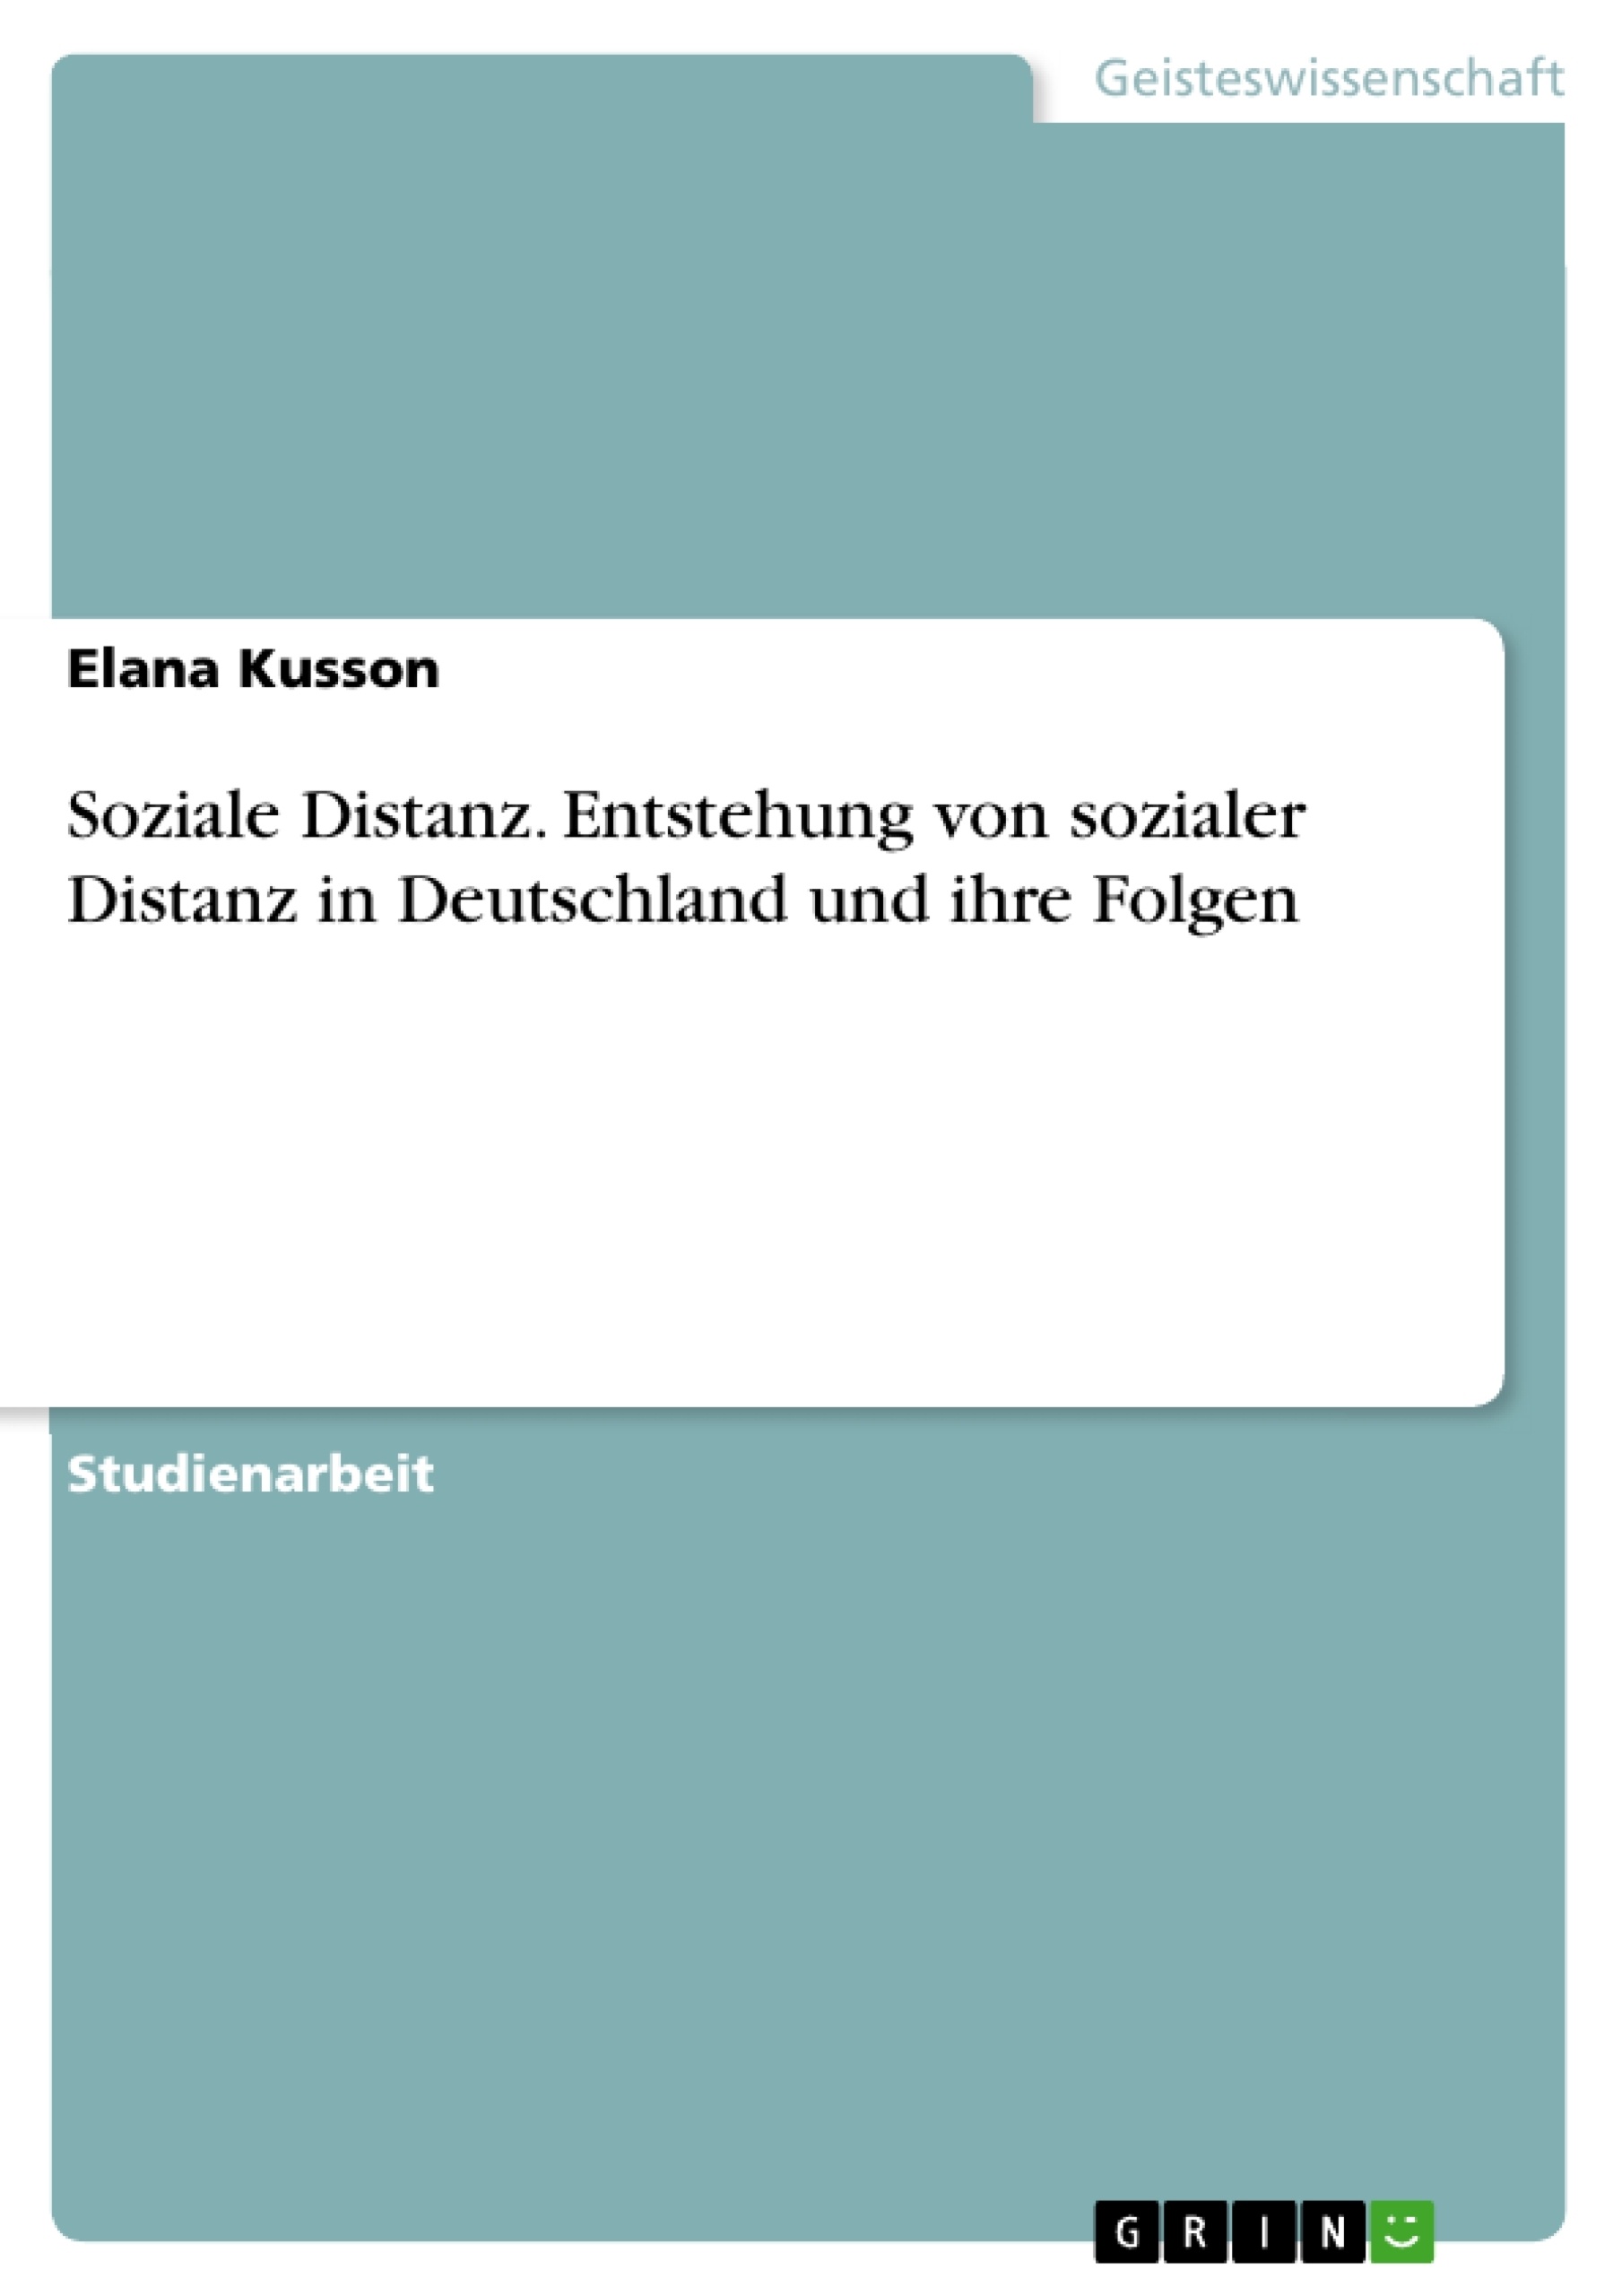 Título: Soziale Distanz. Entstehung von sozialer Distanz in Deutschland und ihre Folgen